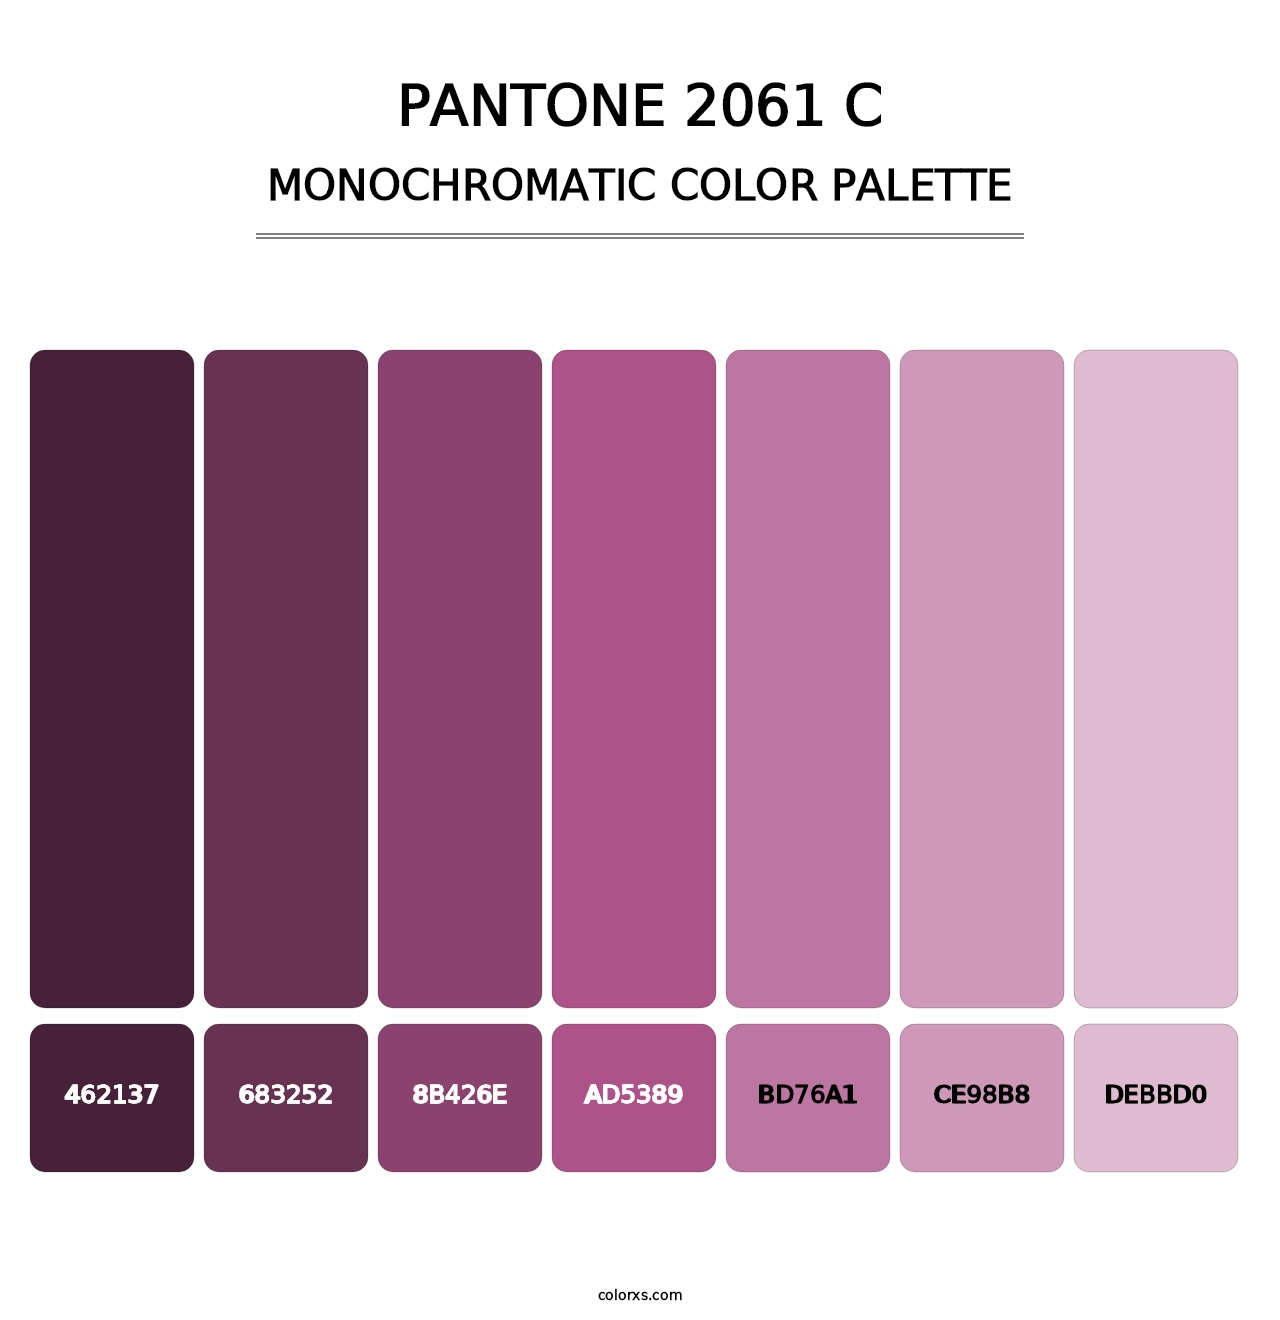 PANTONE 2061 C - Monochromatic Color Palette